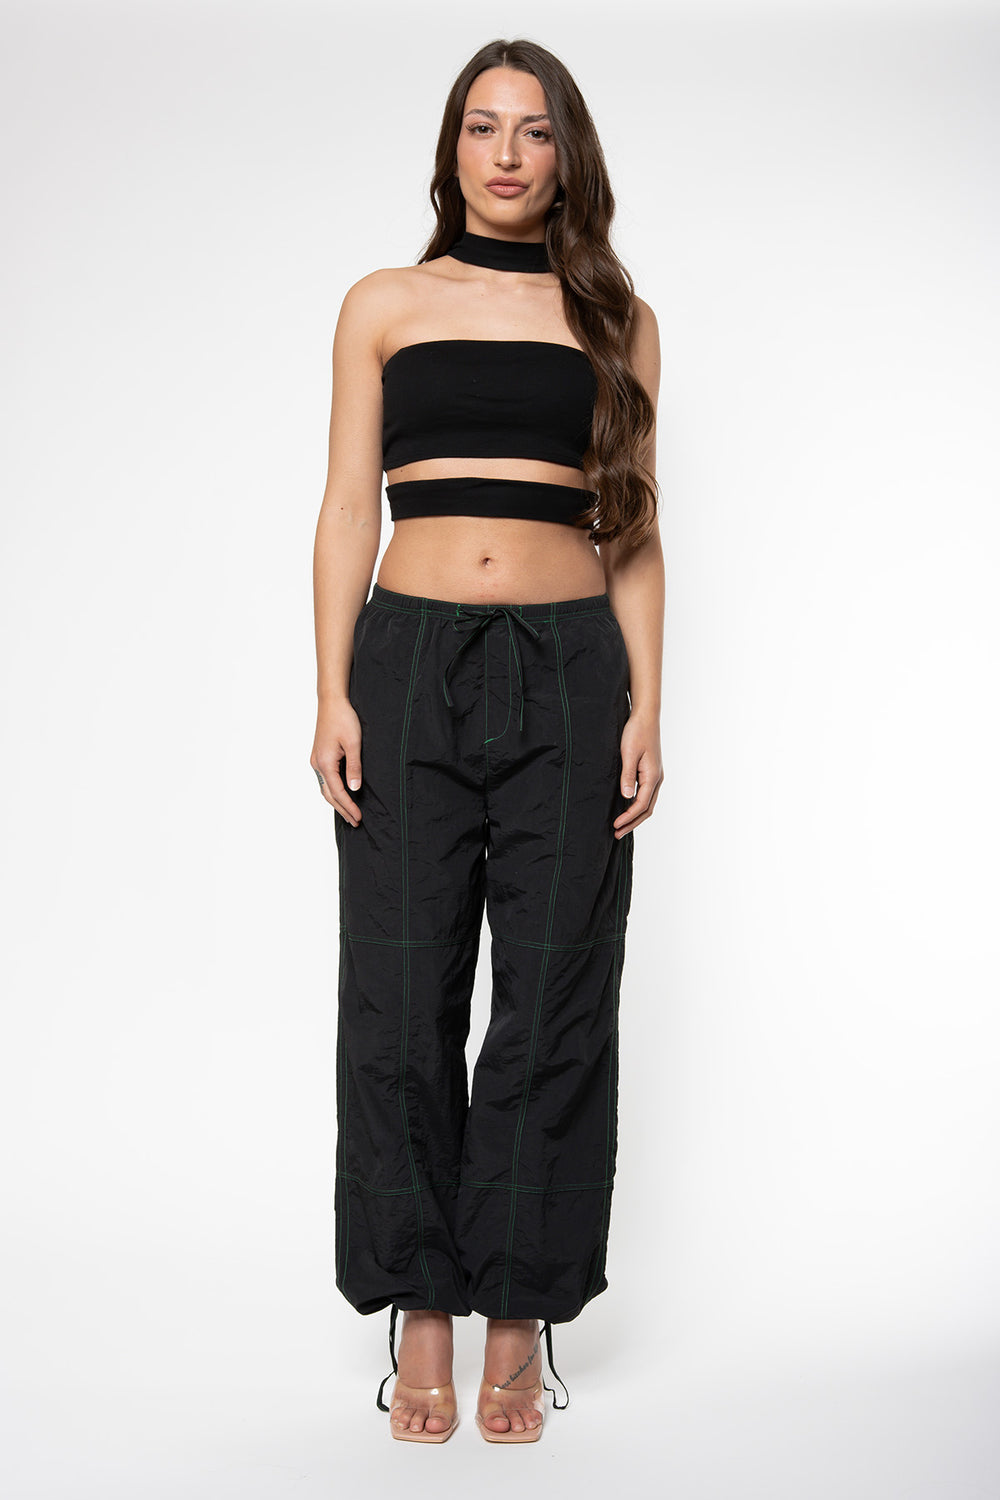 Carly Parachute Pants - Black Pants Routines Fashion   